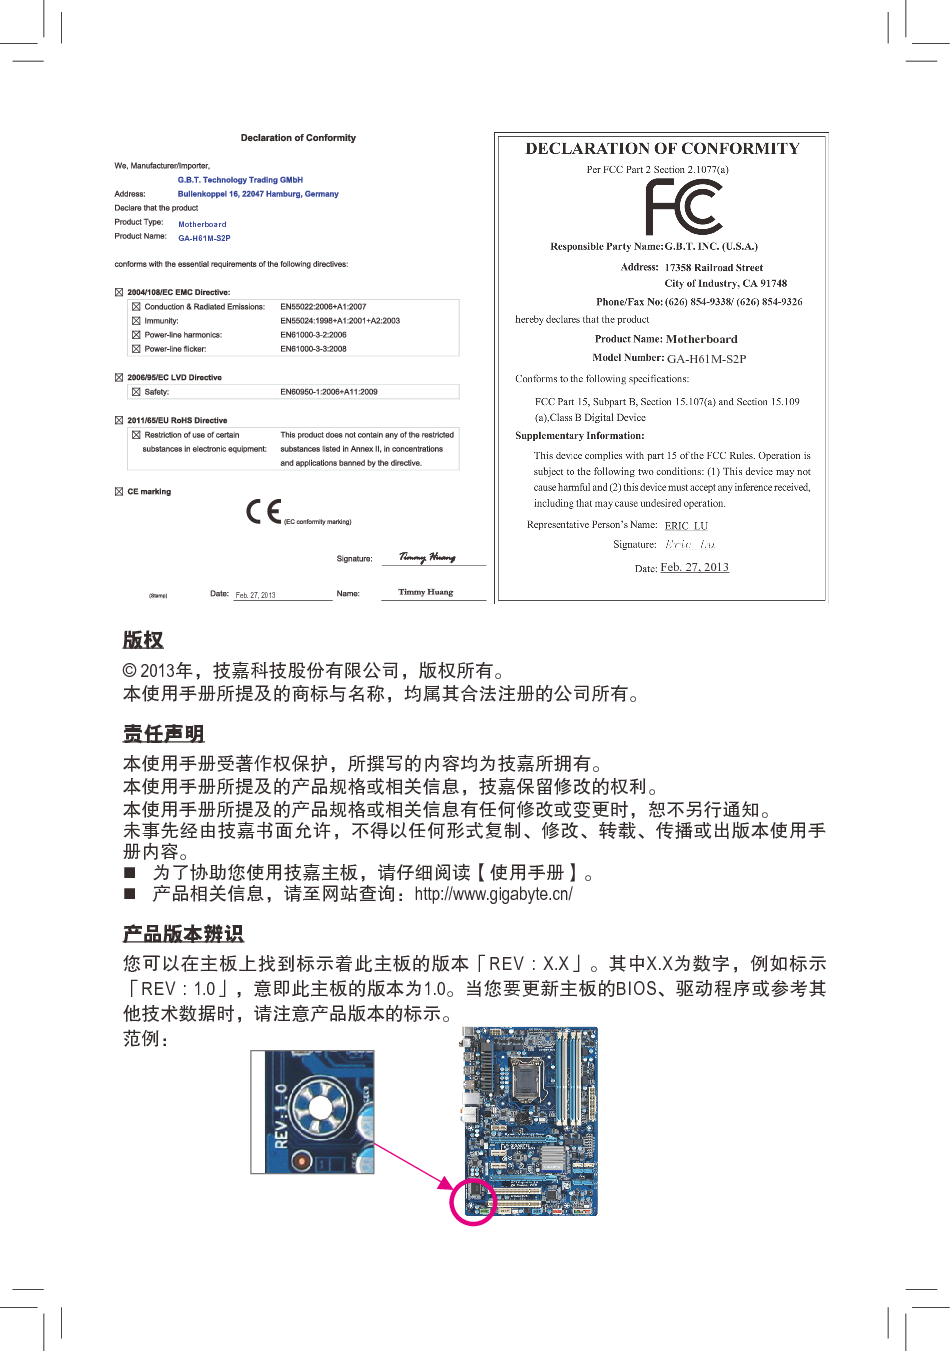 技嘉 Gigabyte GA-H61M-S2P 3001版 使用手册 第1页